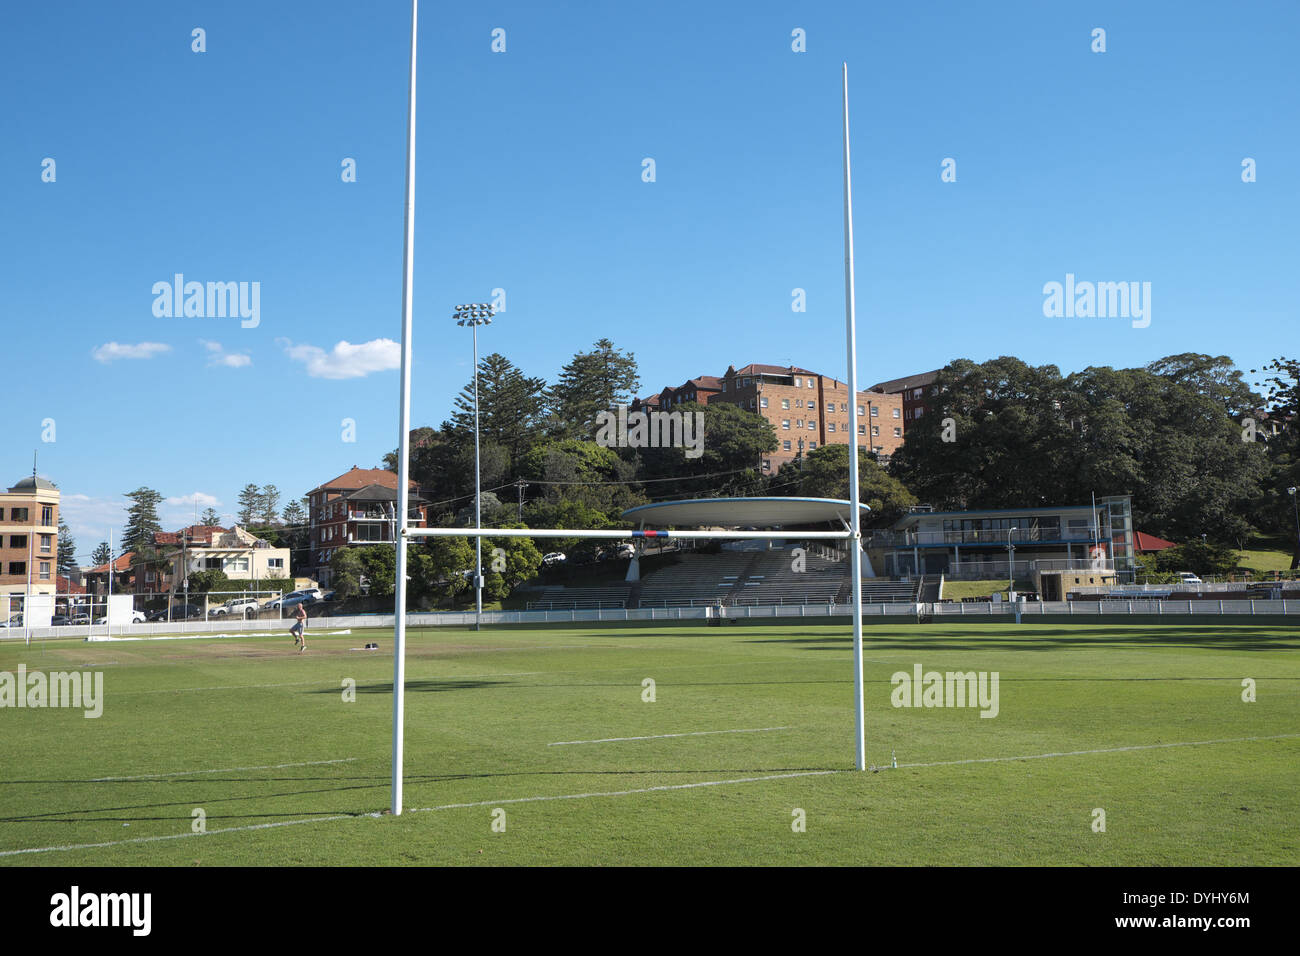 australische footy Oval Sportplatz auf Pittwater Road, Männlich, sydney Stockfoto